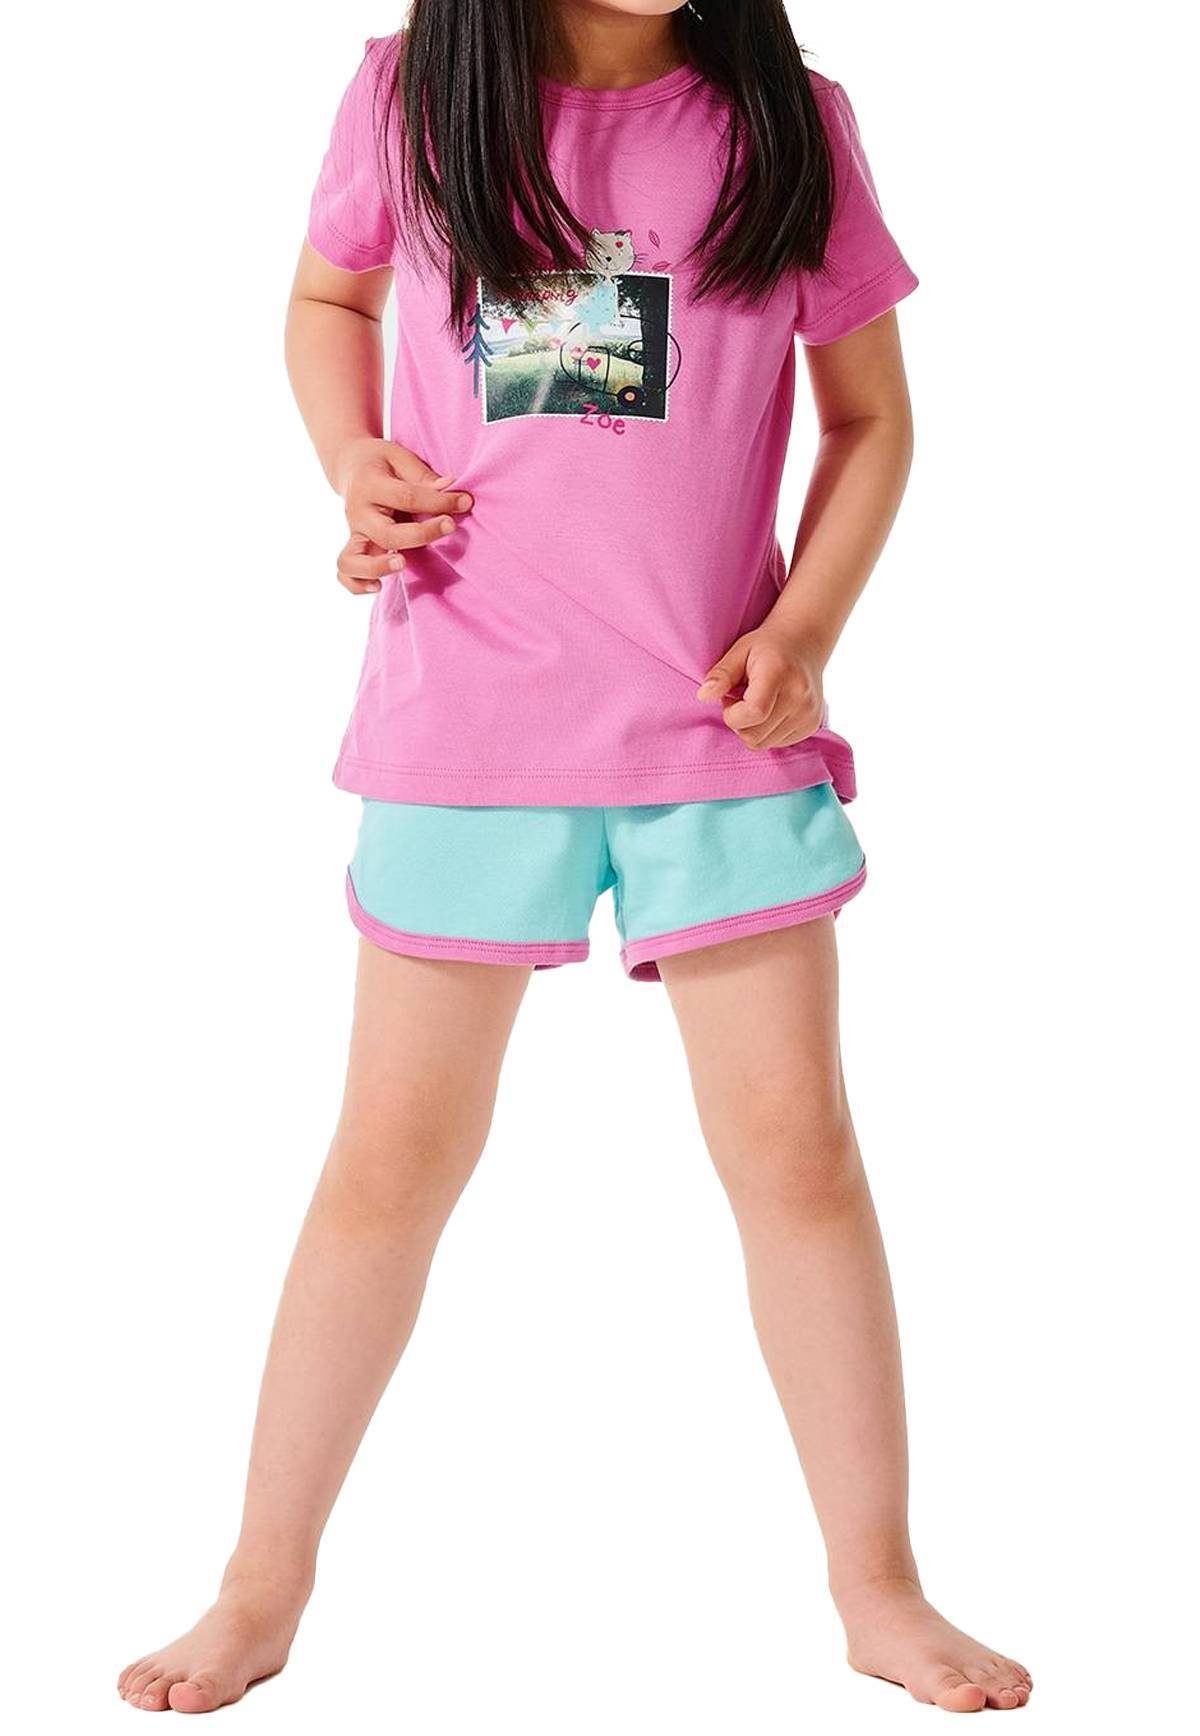 Schlafanzug Kinder, kurzarm, Foto-Motiv Mädchen Pyjama Pink/Türkis - Schiesser